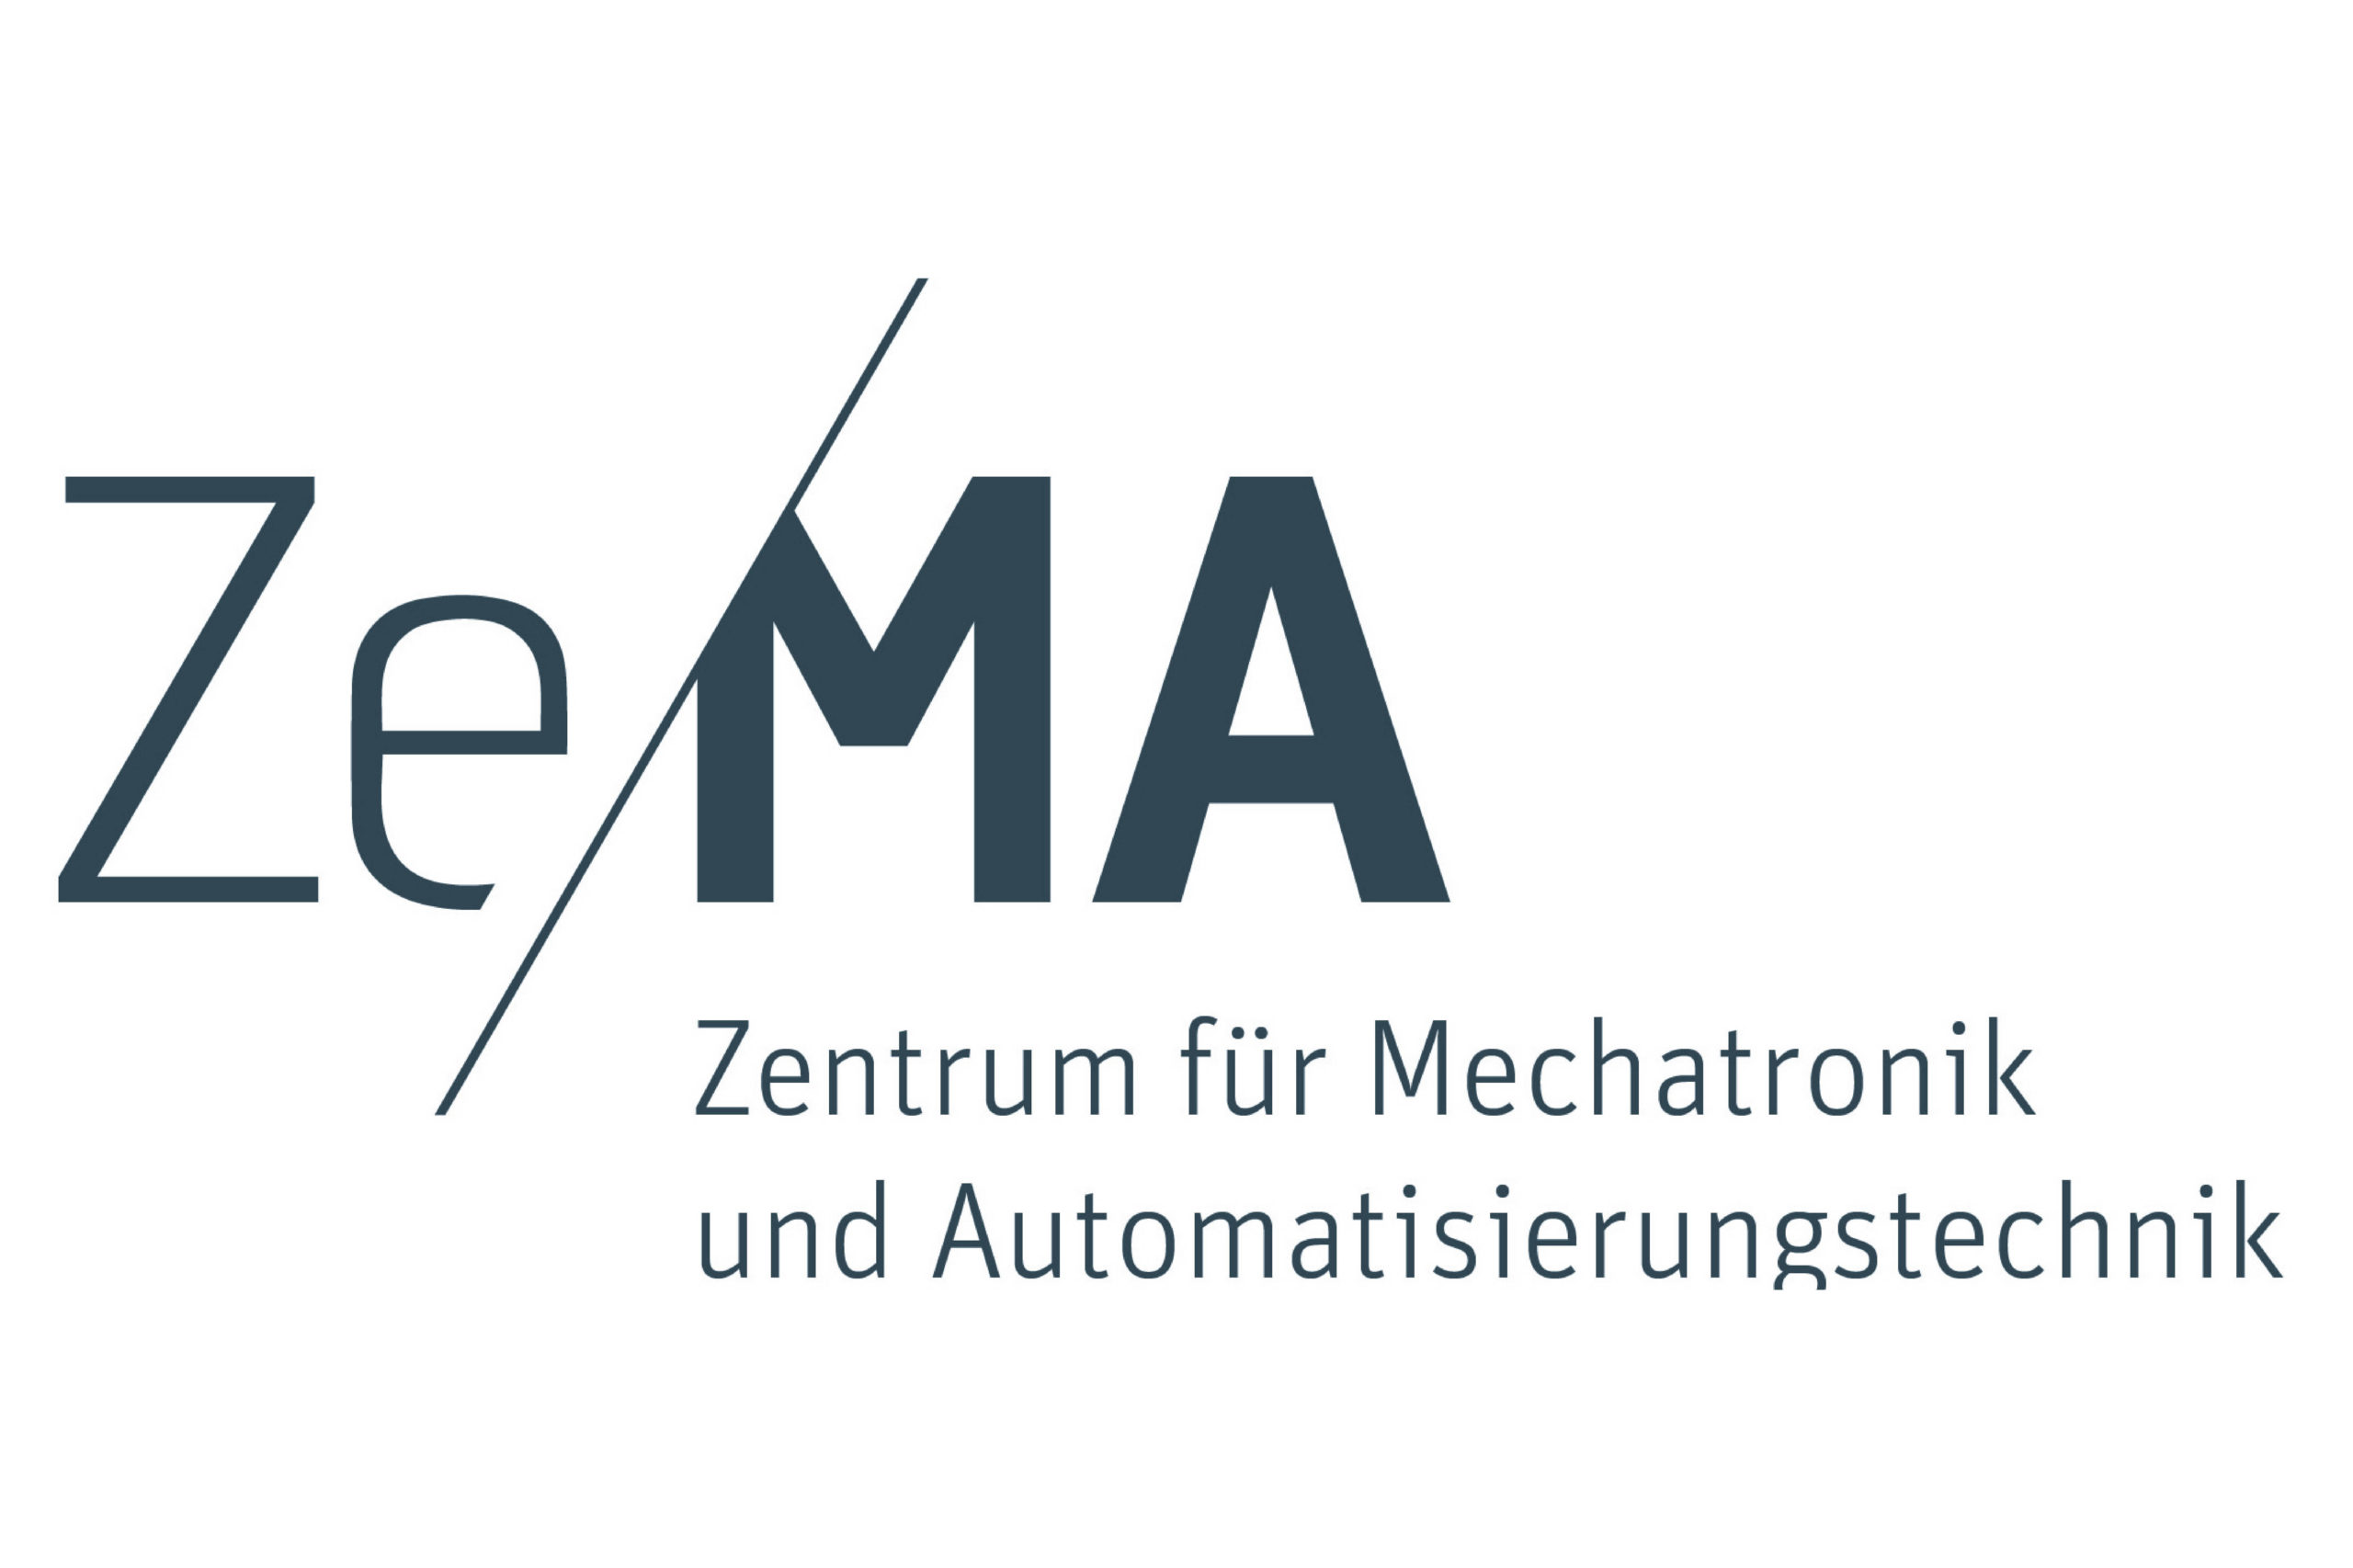 ZeMA – Zentrum für Mechatronik und Automatisierungstechnik